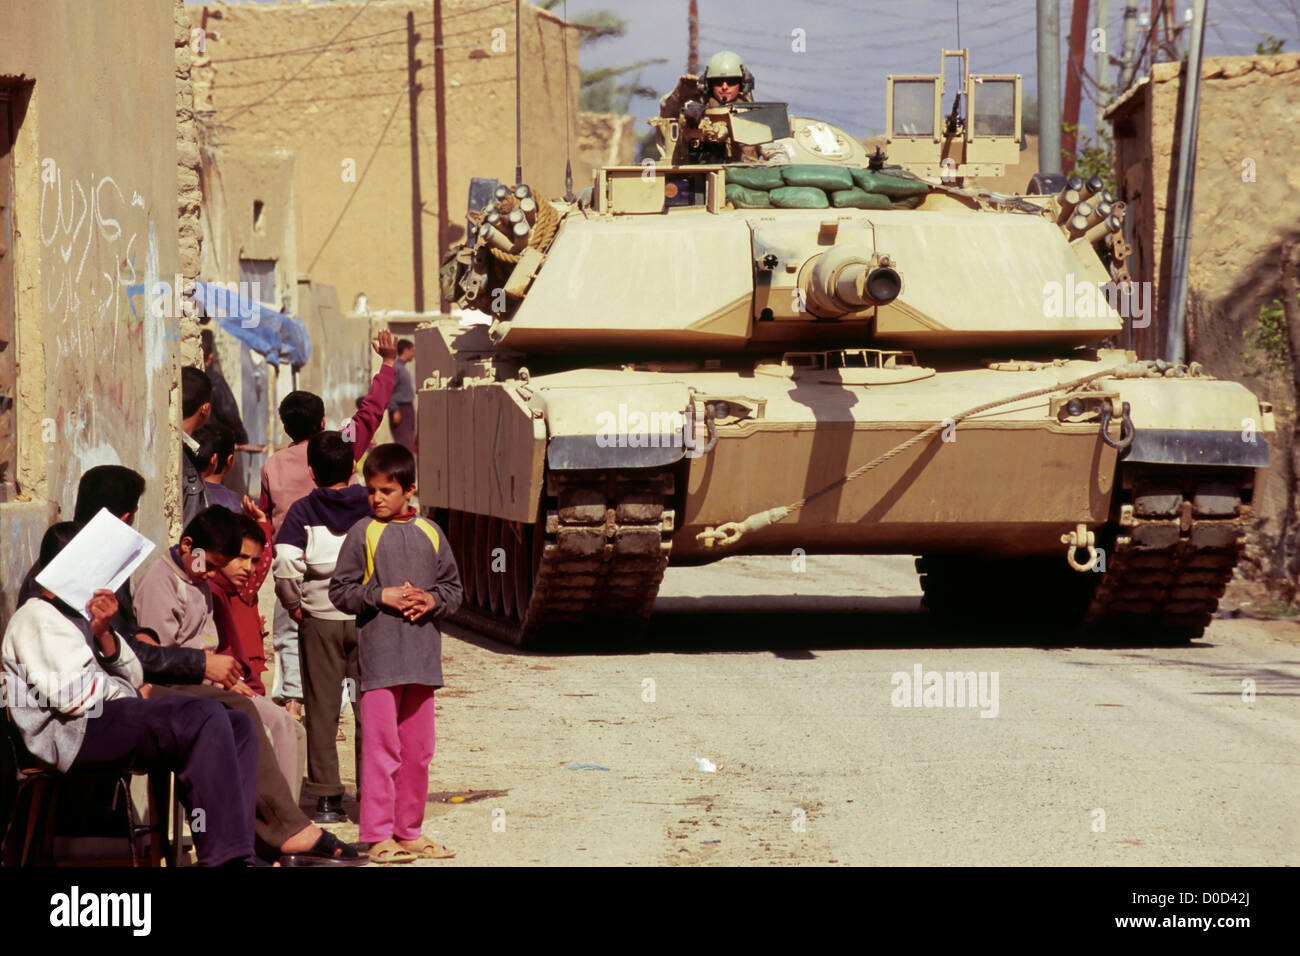 Kinder blicken auf einen vorbeifahrenden Marine Corps Tank während einer Kampfhandlung in Haqlaniyah, Irak Stockfoto